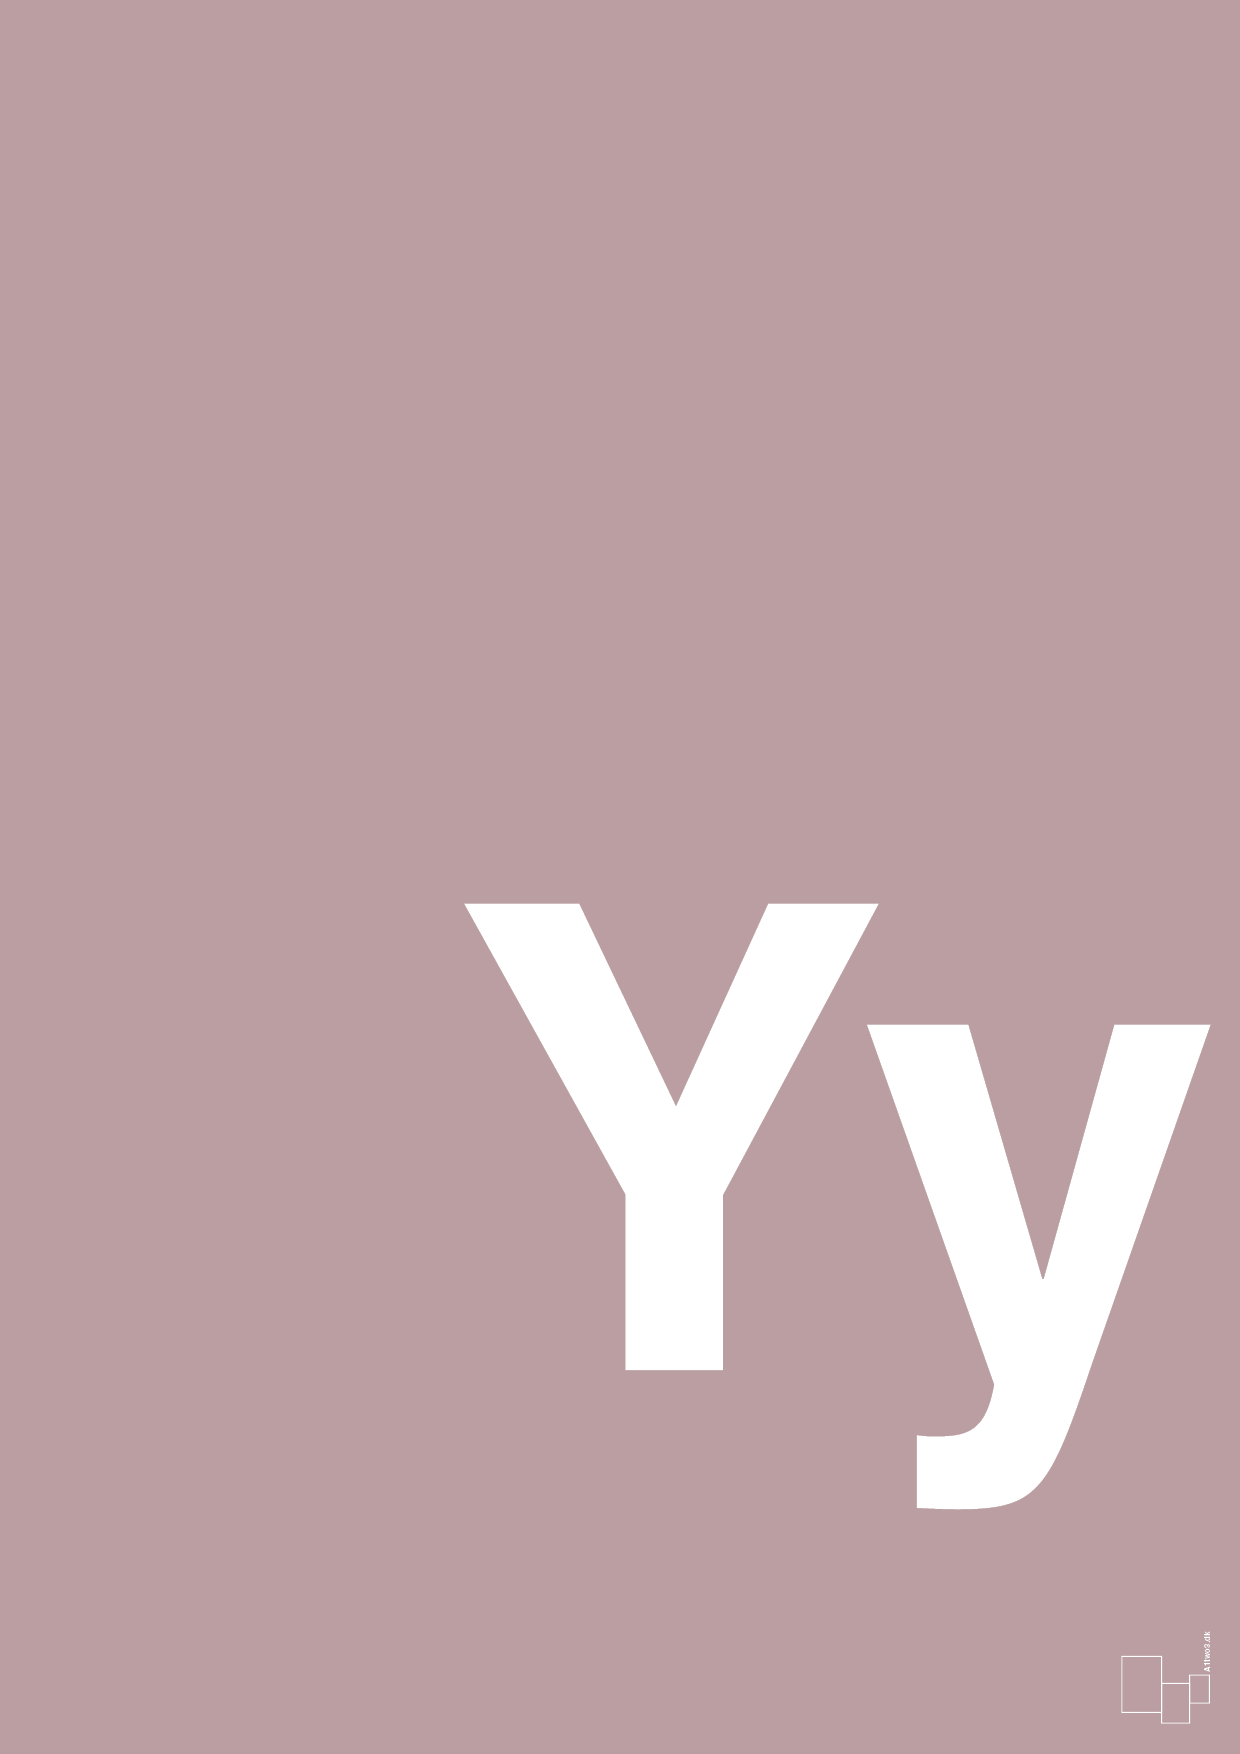 bogstav yy - Plakat med Bogstaver i Light Rose